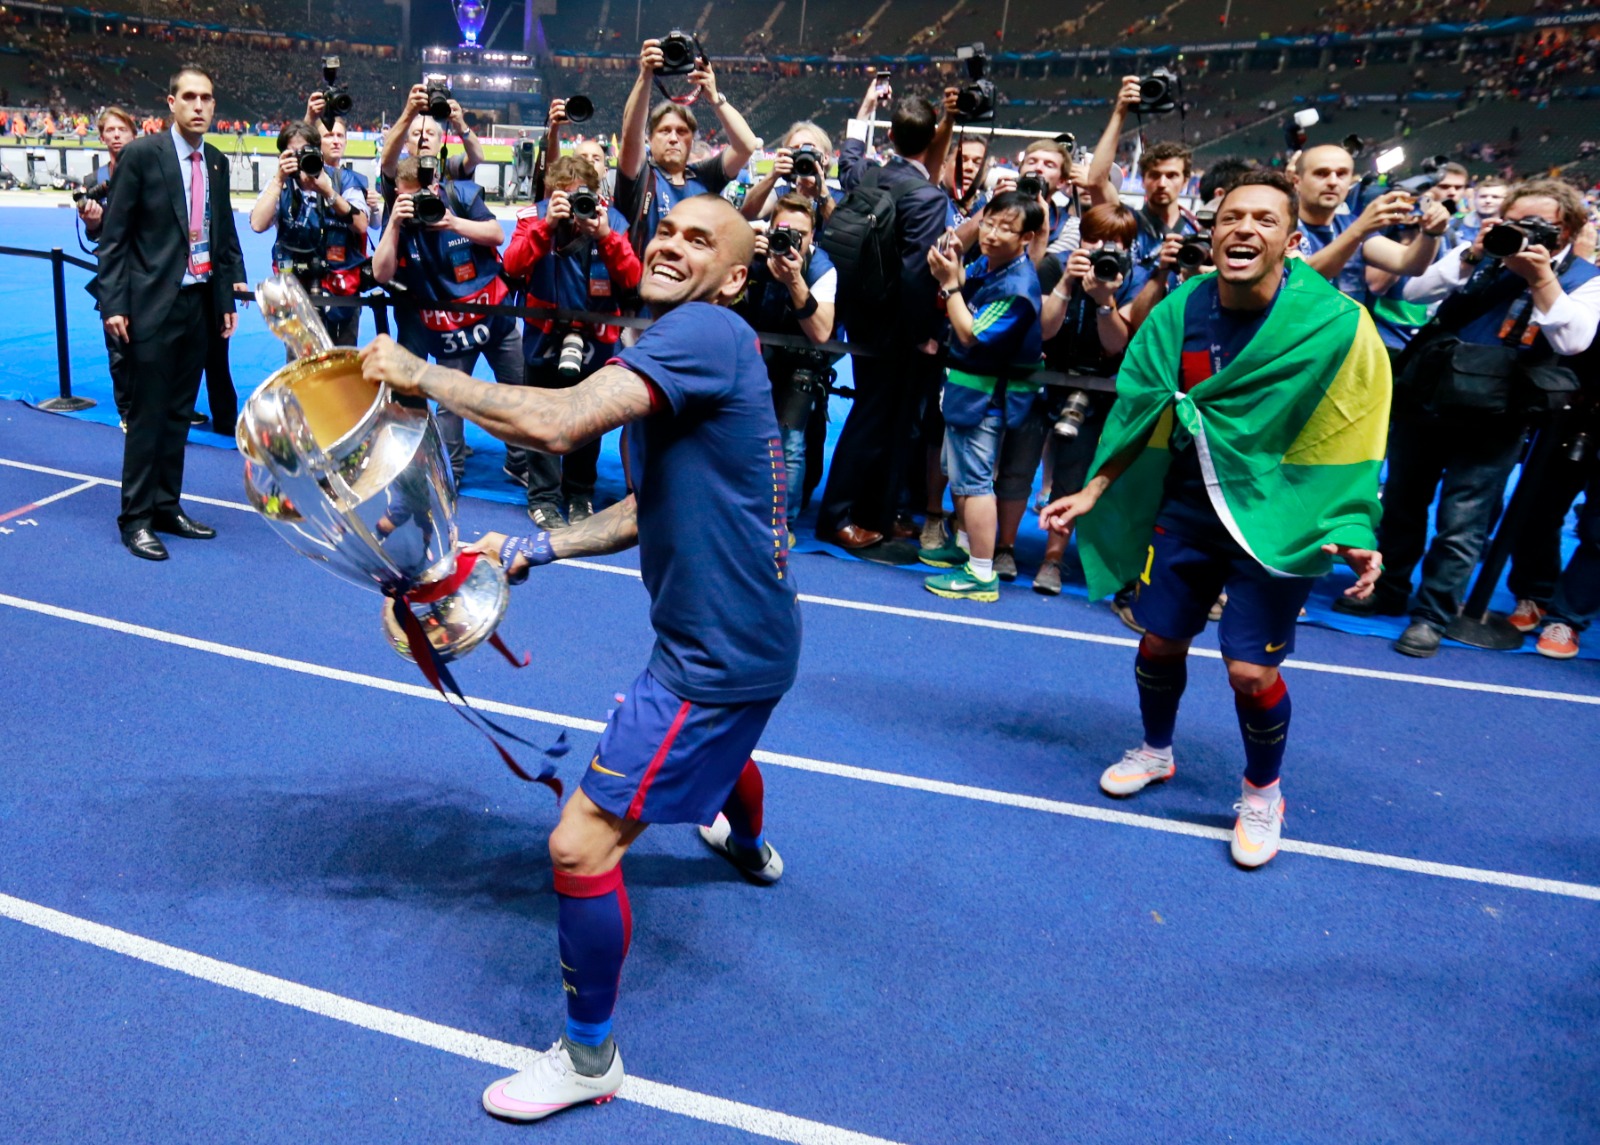 داني ألفيس مدافع برشلونة السابق يحتفل بعد التتويج بلقب دوري أبطال أوروبا - 6 يونيو 2015